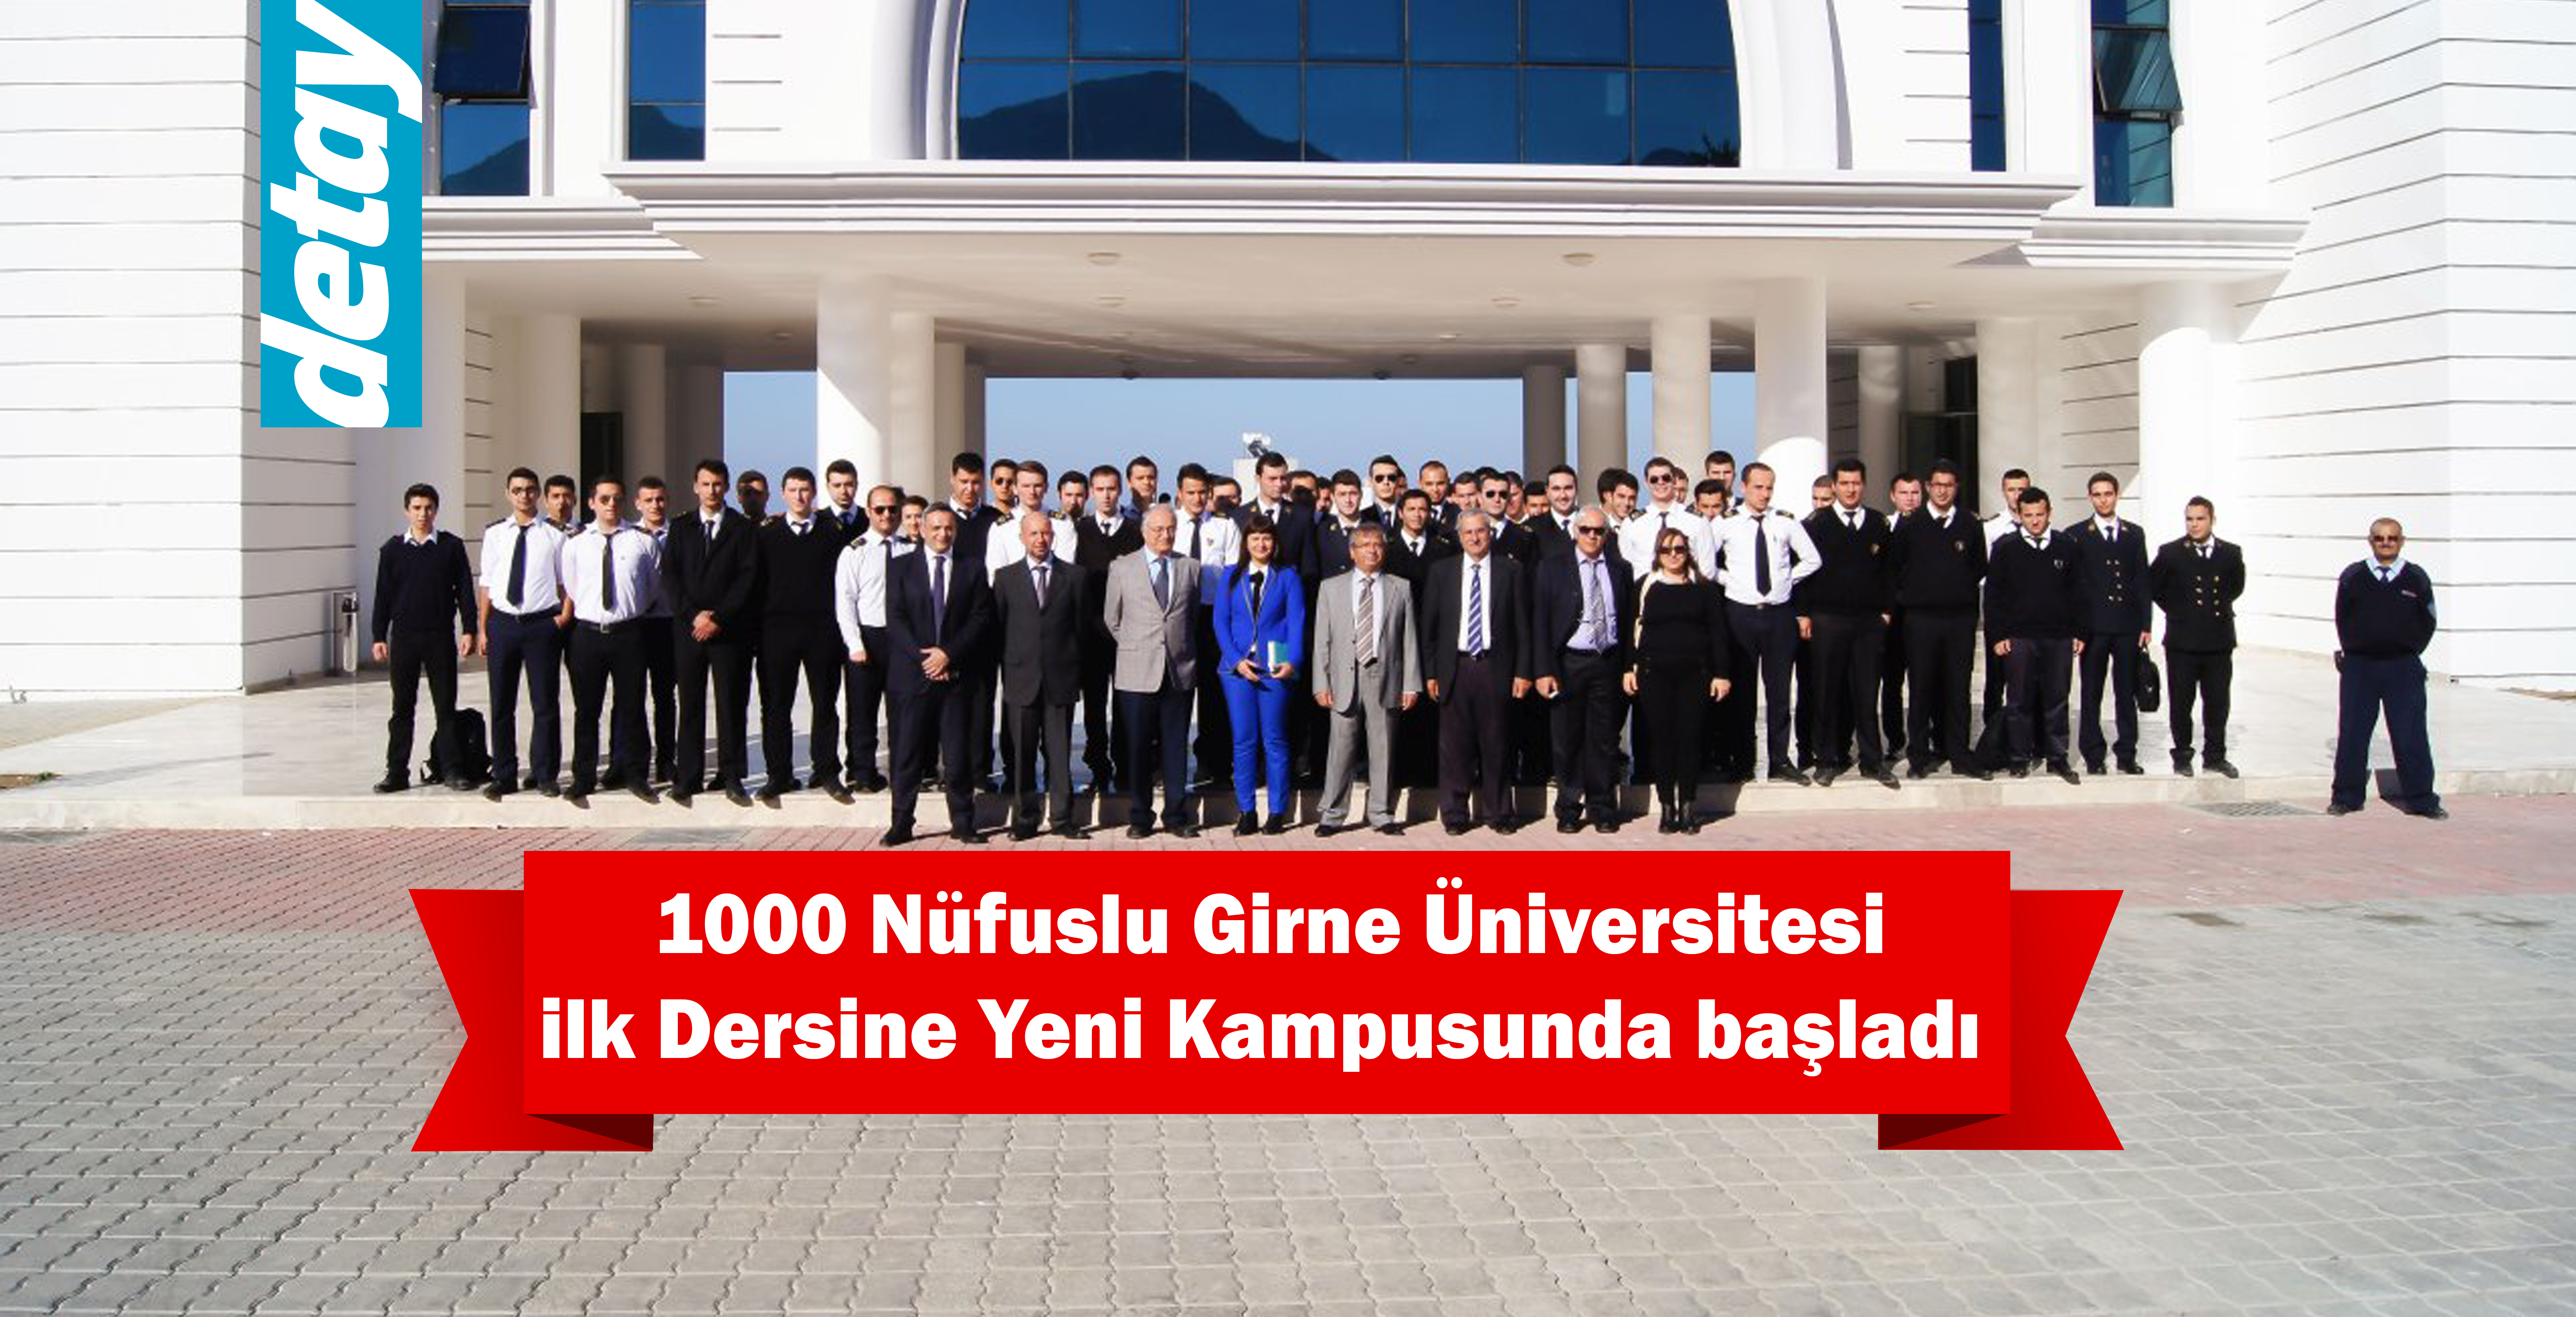 1000 Nüfuslu Girne Üniversitesi İlk Dersine Yeni Kampusunda Başladı...